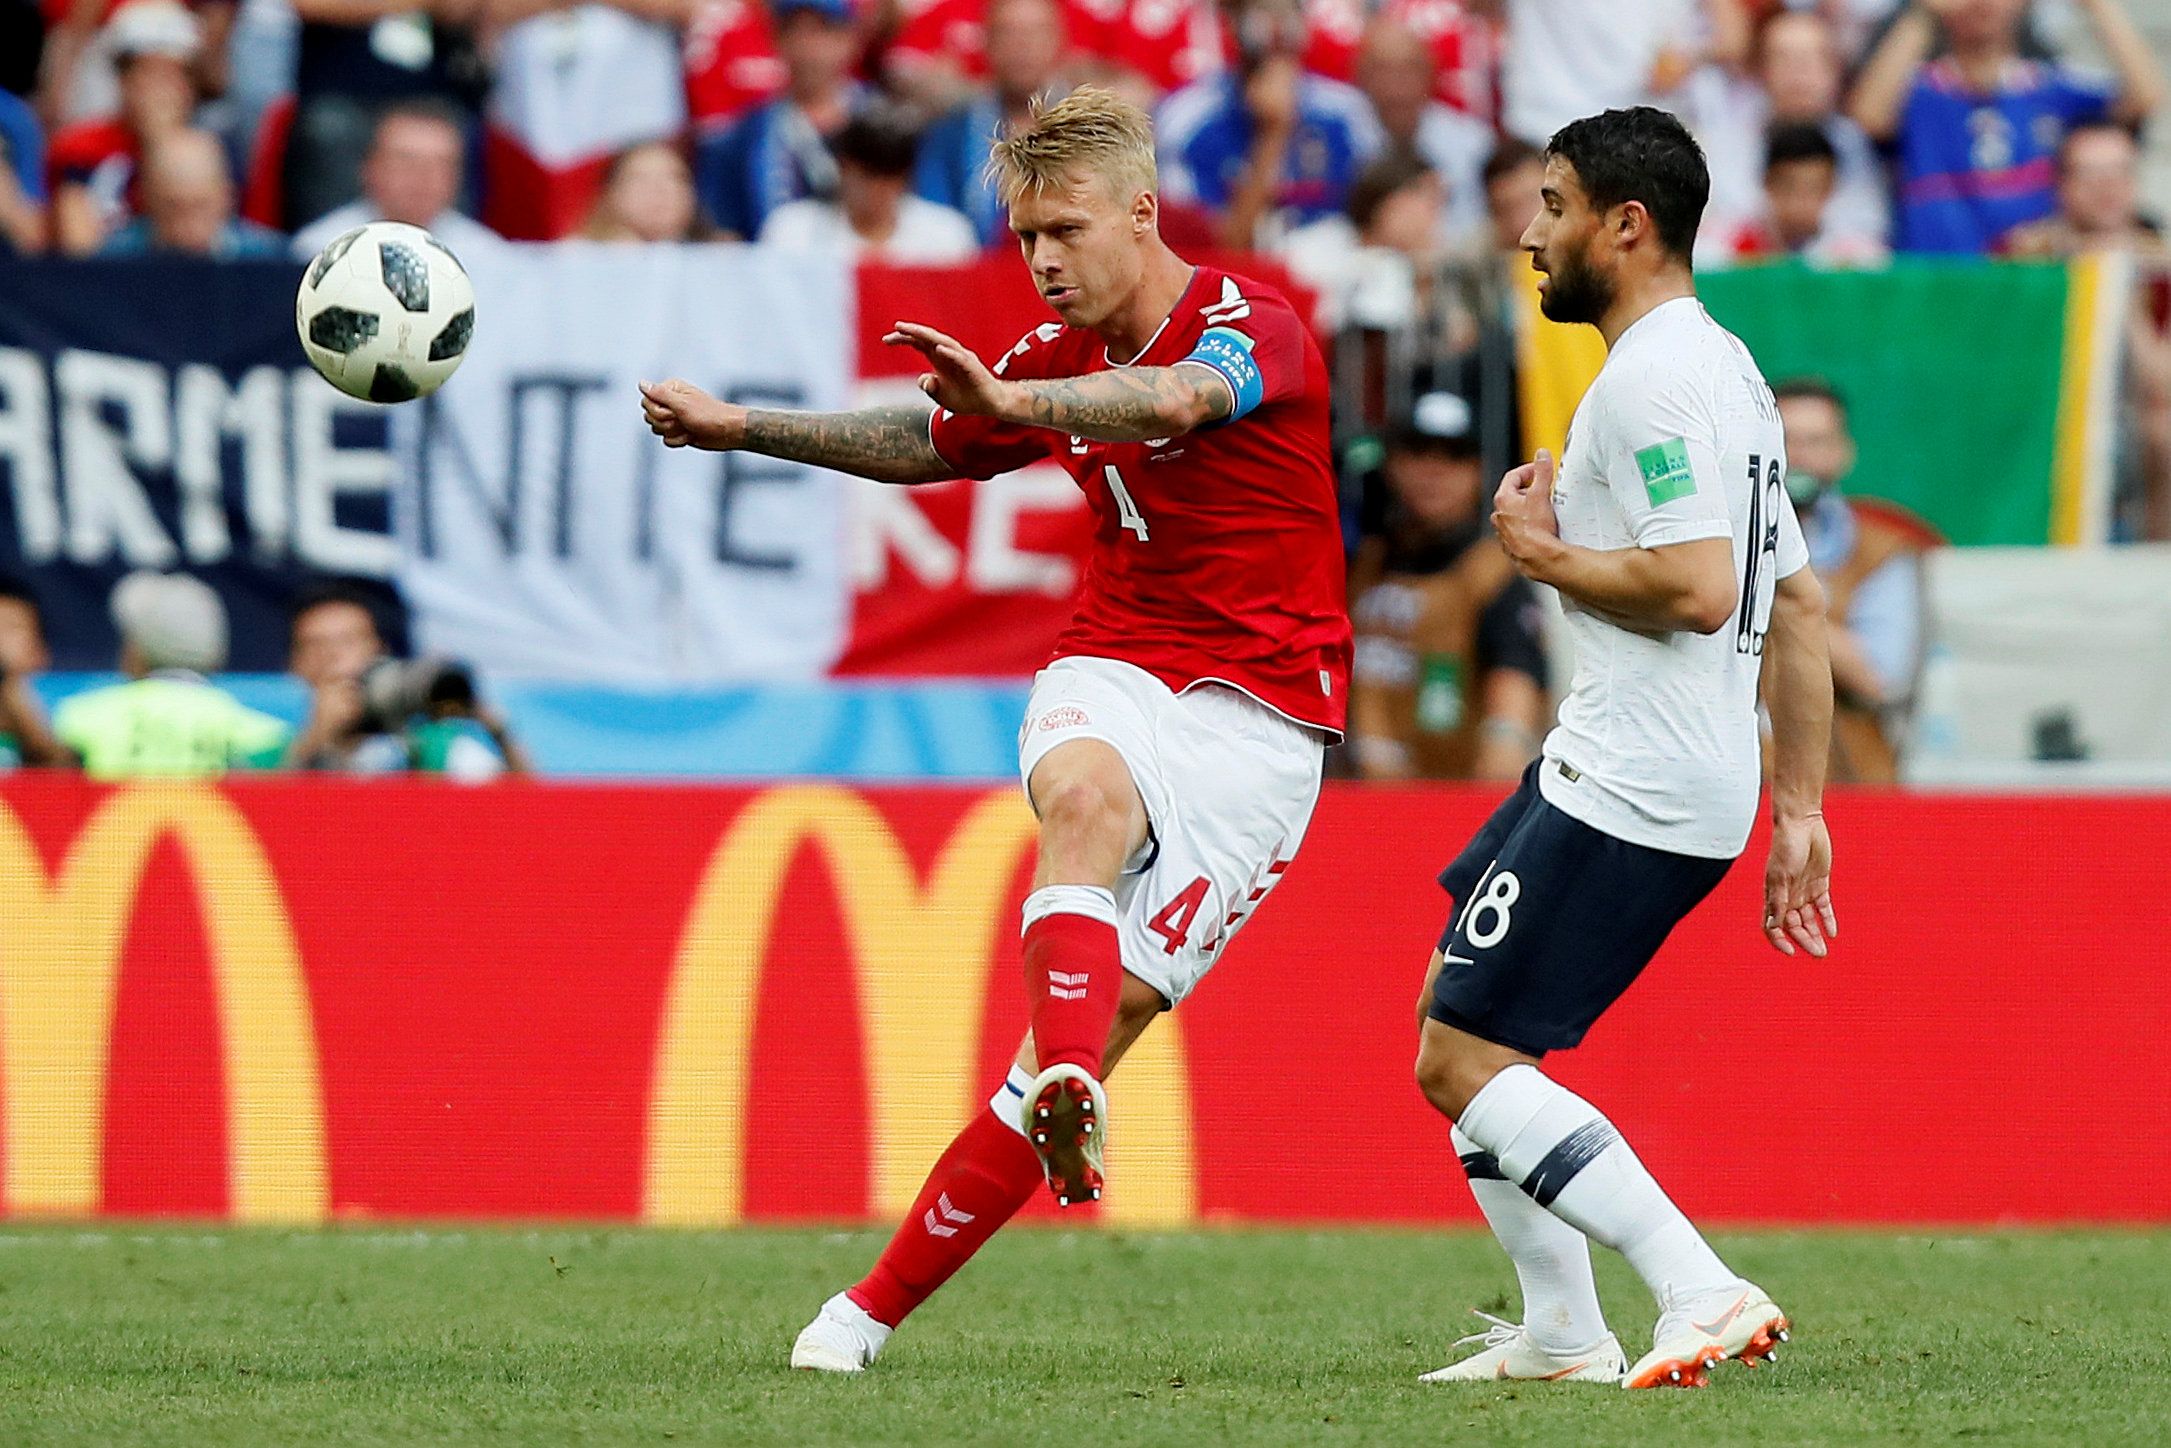 Soccer Football - World Cup - Group C - Denmark vs France - Luzhniki Stadium, Moscow, Russia - June 26, 2018   Denmark's Simon Kjaer in action                         REUTERS/Maxim Shemetov